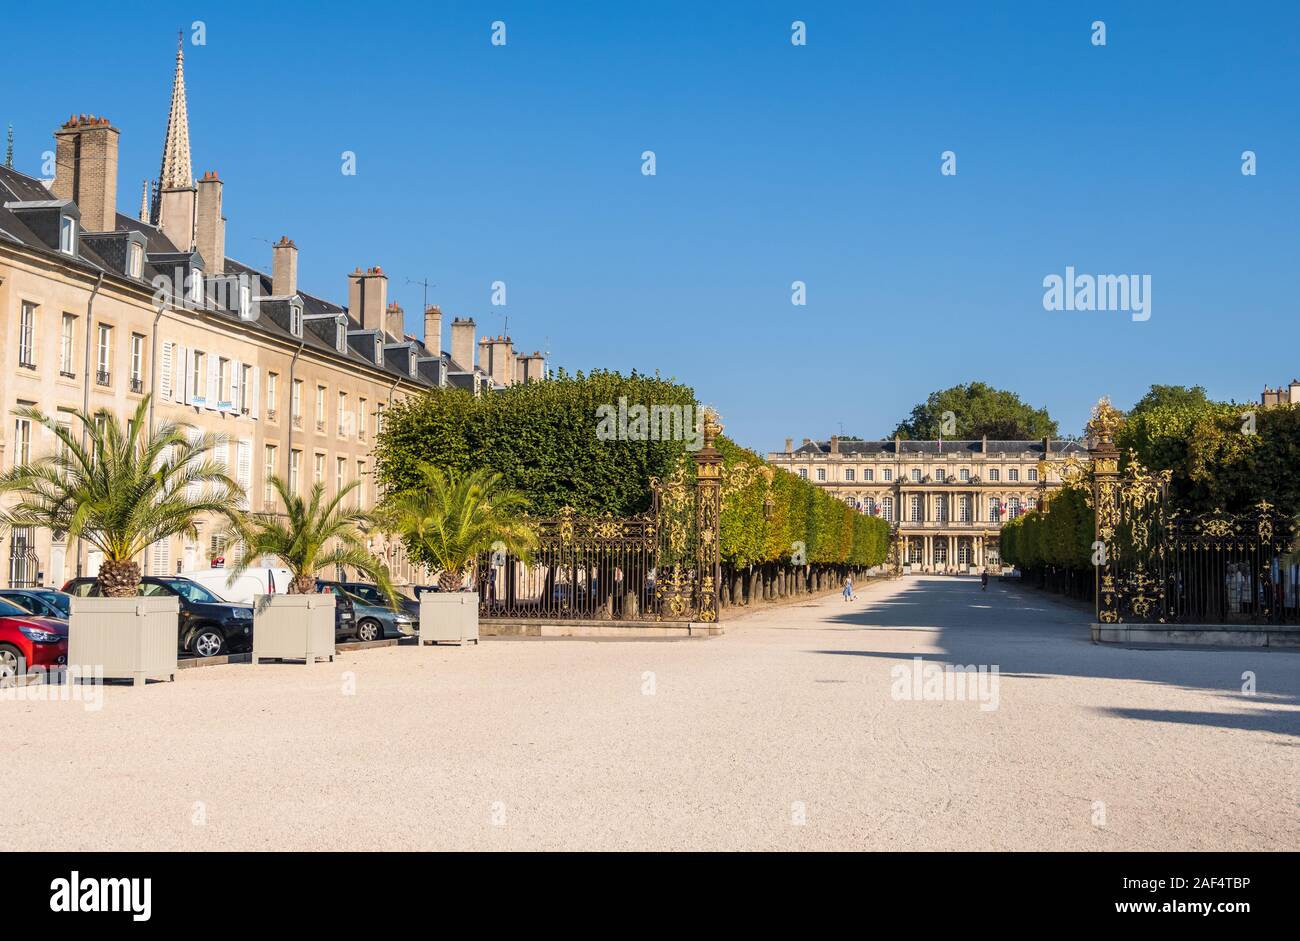 Nancy, Francia - 31 de agosto de 2019: El Palacio del Gobierno en la Plaza de la portadora en la ciudad de Nancy, Lorena, región de Francia Foto de stock